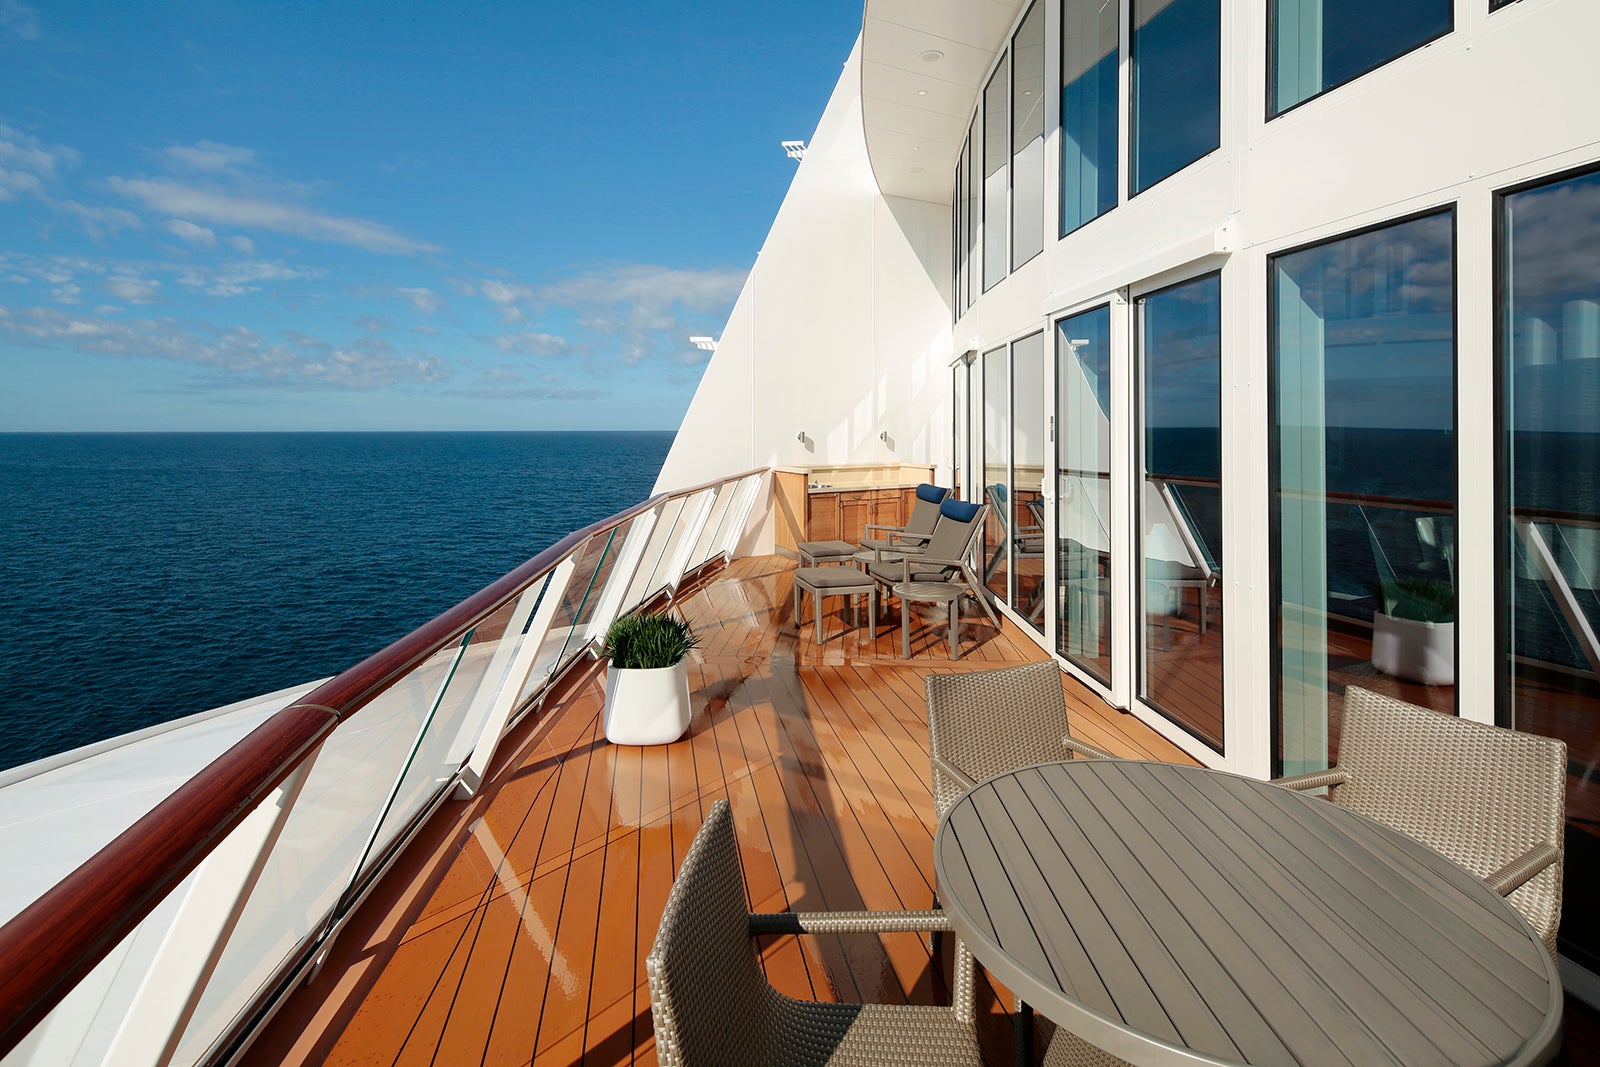 Royal Loft suite balcony overlooking the ocean